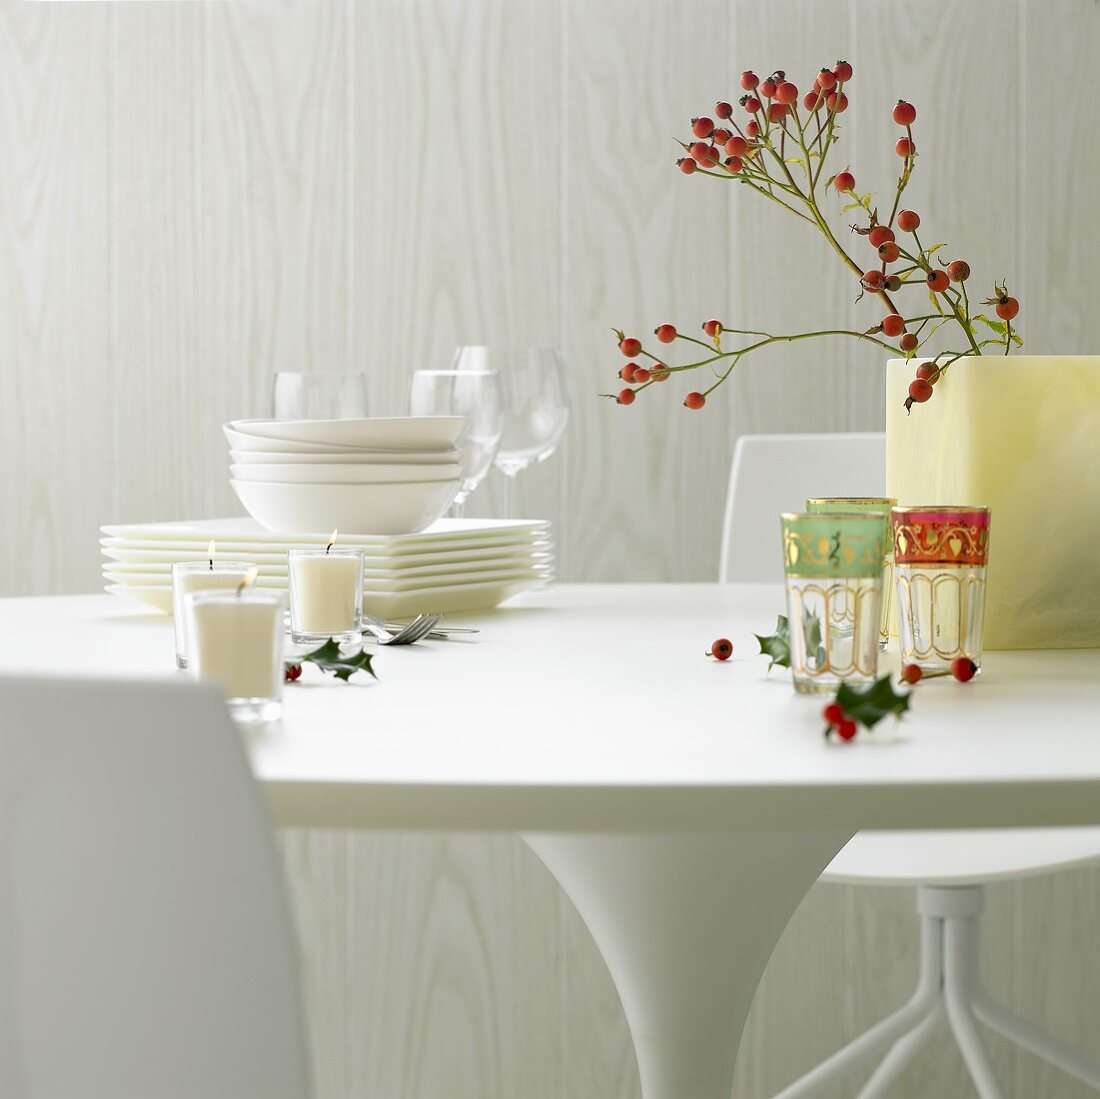 Gedeckter Tisch mit weißem Geschirr, Gläsern, Kerzen, Hagebutten und Ilex